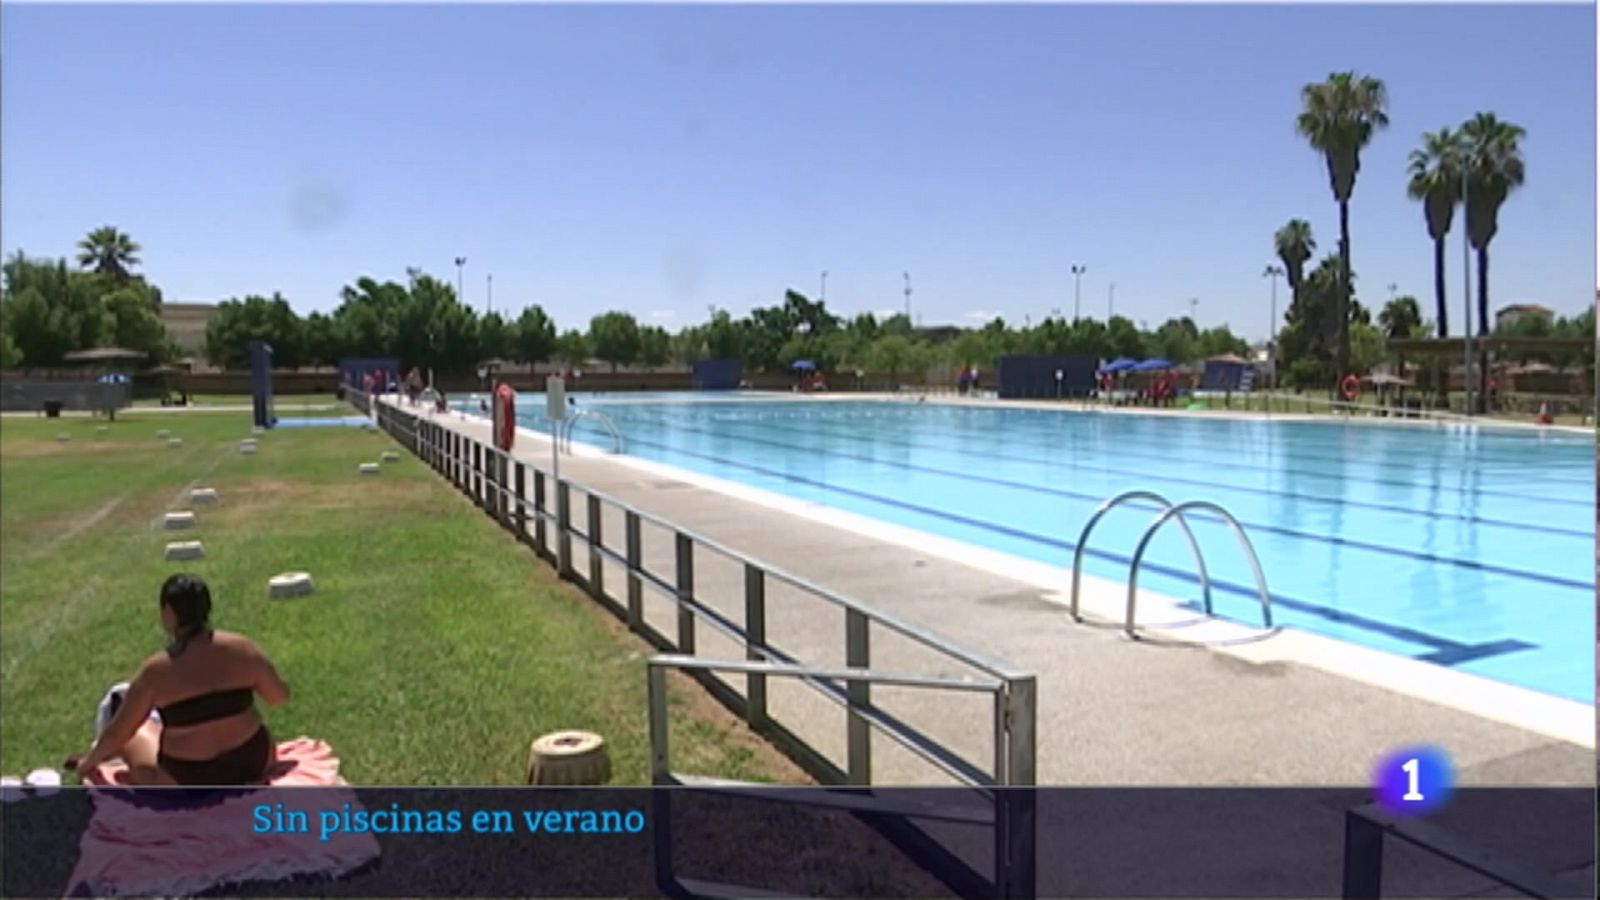 Un verano sin piscinas para el sur de Extremadura - RTVE.es